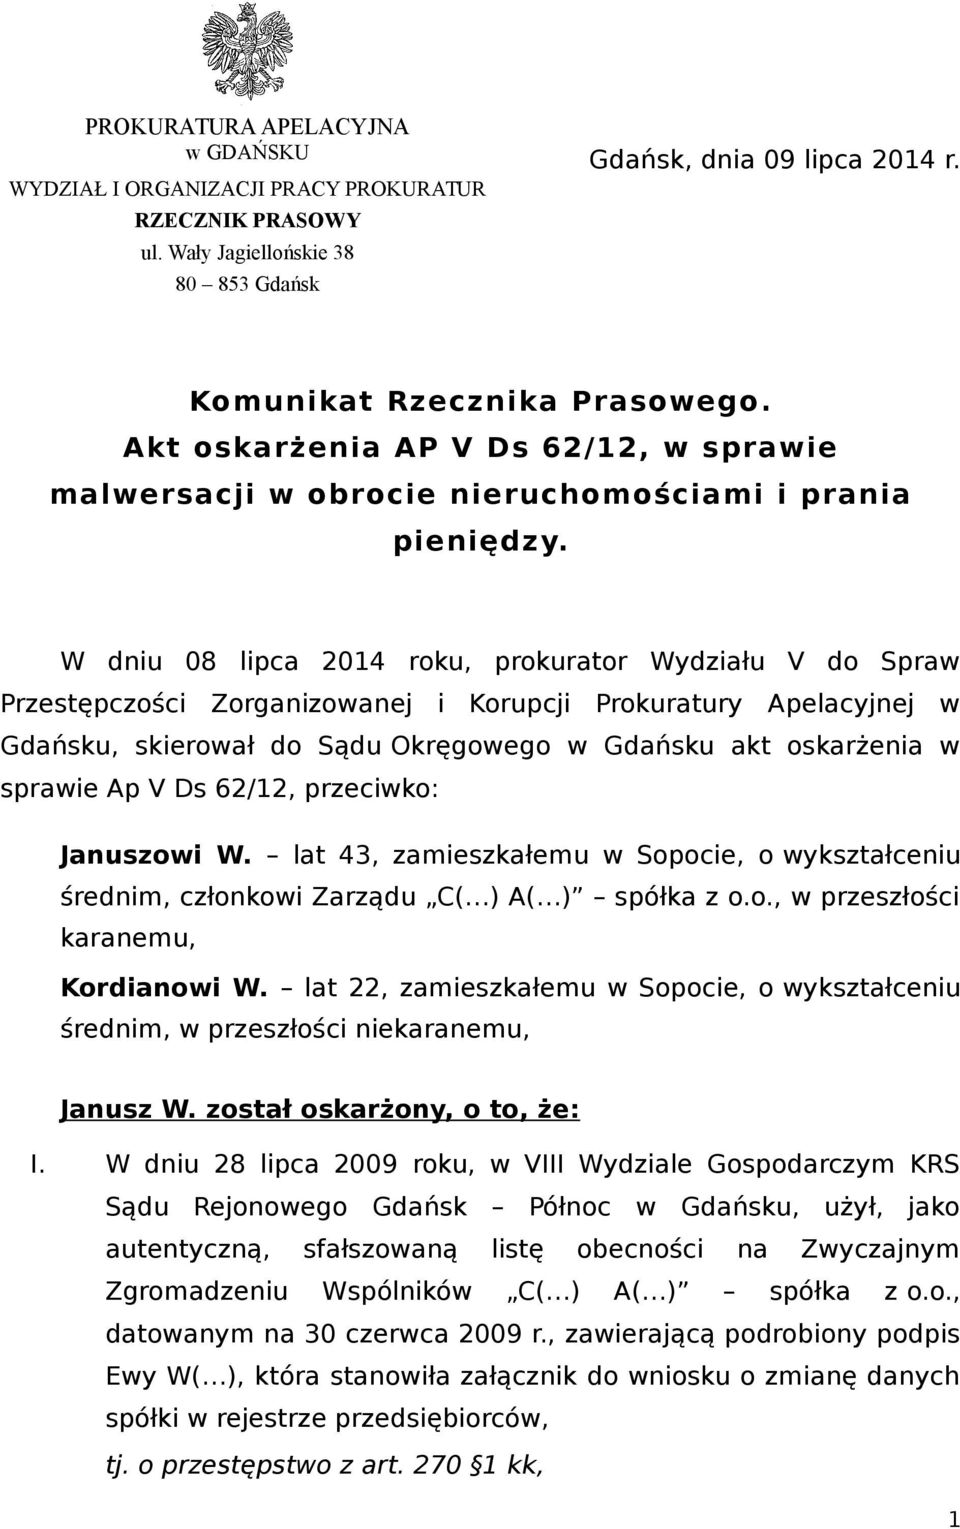 W dniu 08 lipca 2014 roku, prokurator Wydziału V do Spraw Przestępczości Zorganizowanej i Korupcji Prokuratury Apelacyjnej w Gdańsku, skierował do Sądu Okręgowego w Gdańsku akt oskarżenia w sprawie